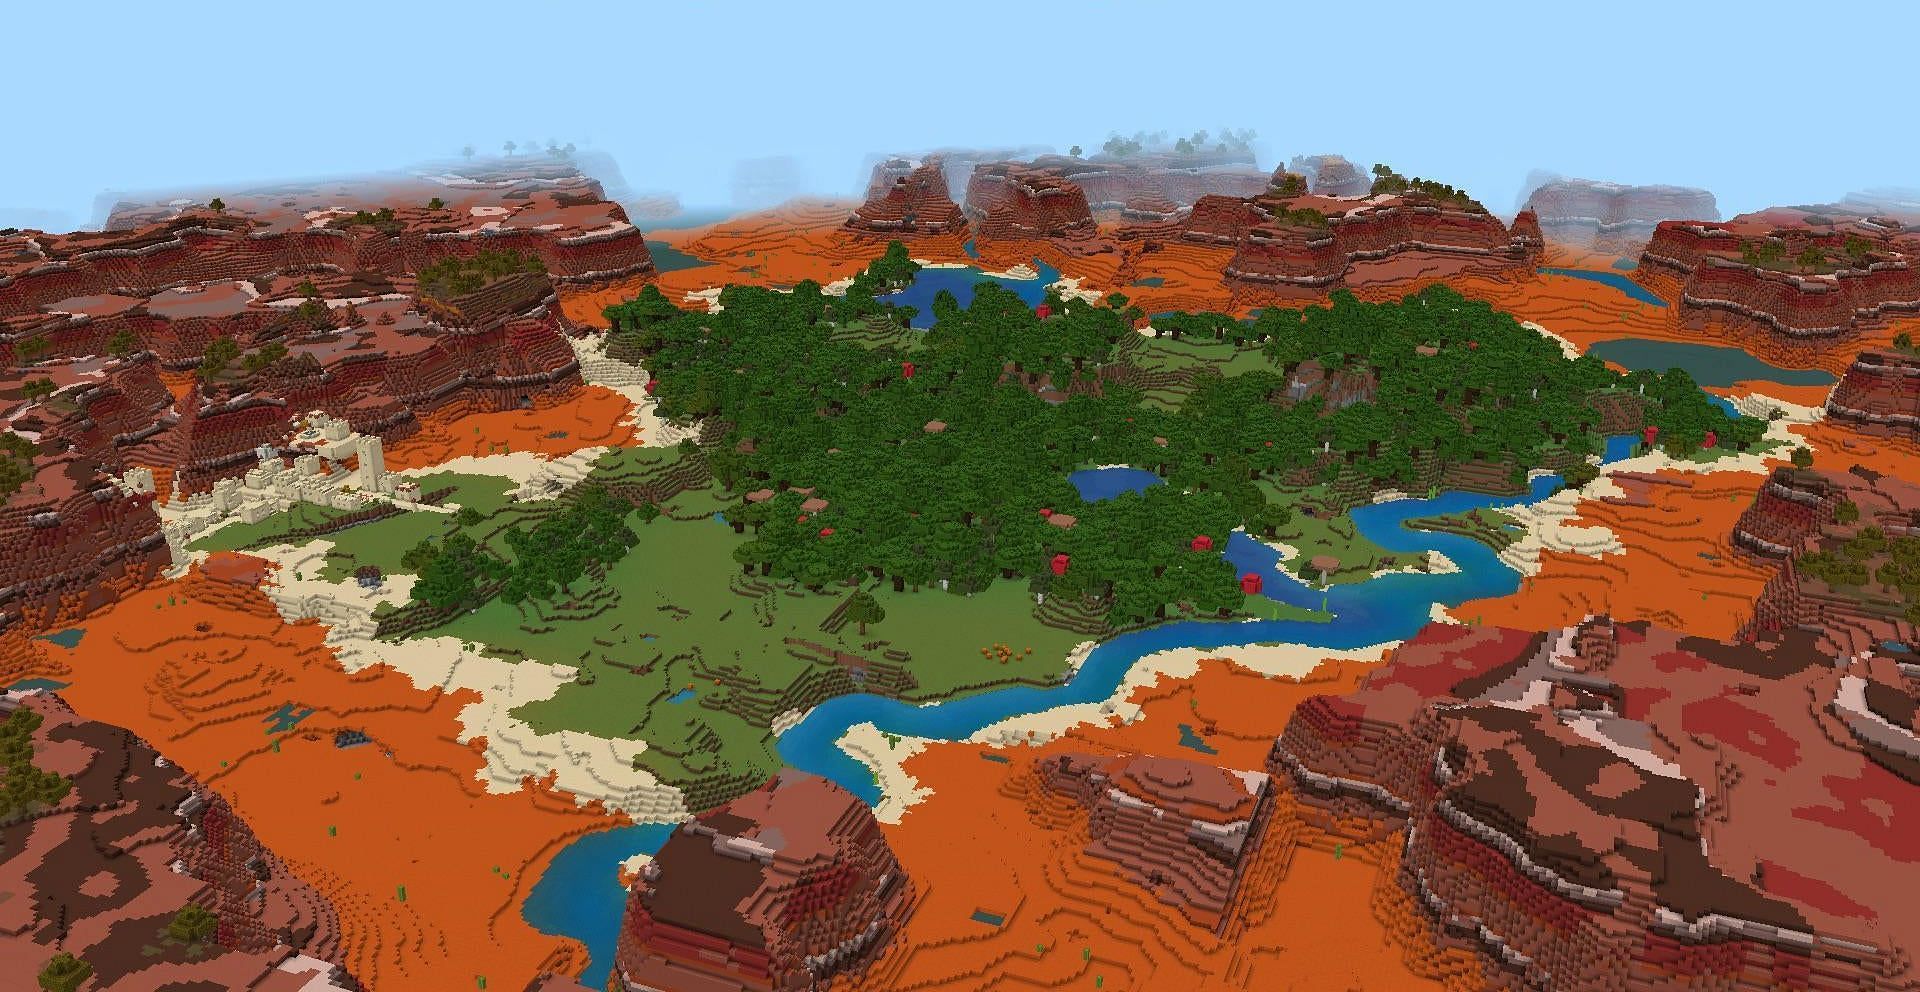 Unreal terrain generation (Image via u/ricecake1111113 on Reddit)